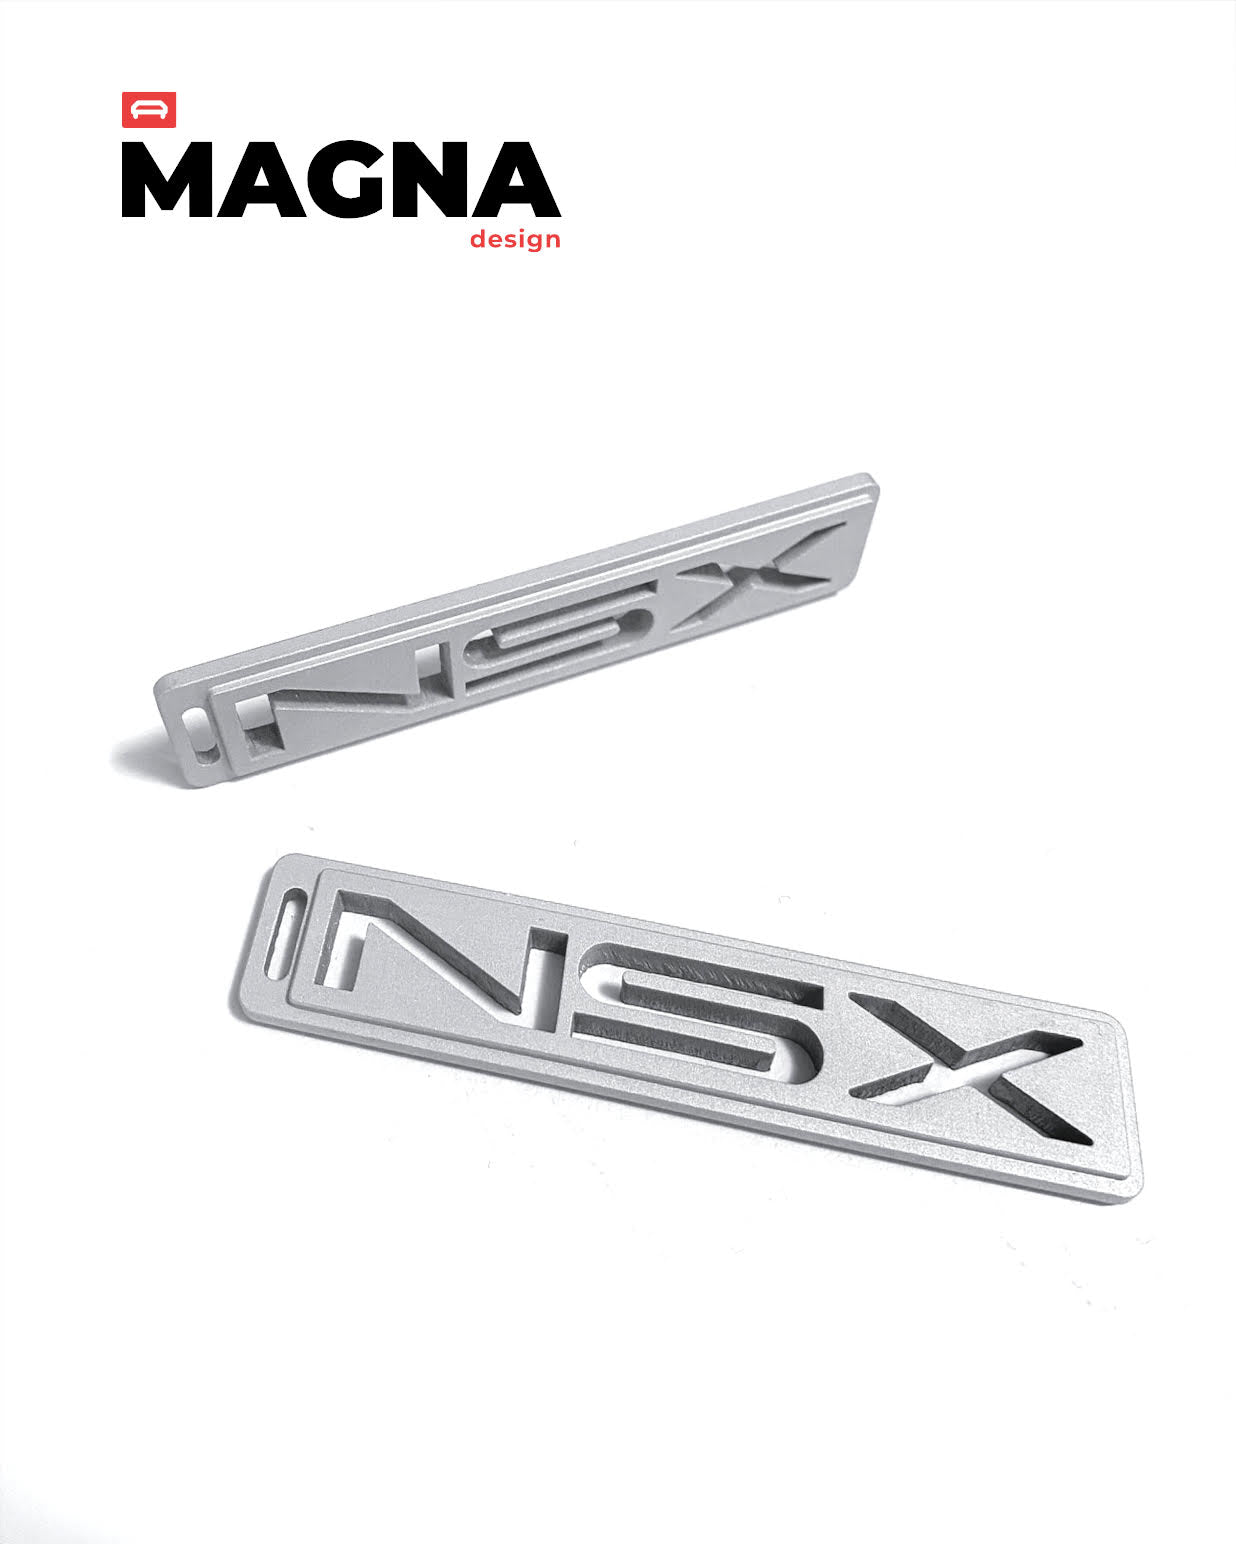 Magna Instruments NSX Aluminum Key Tag